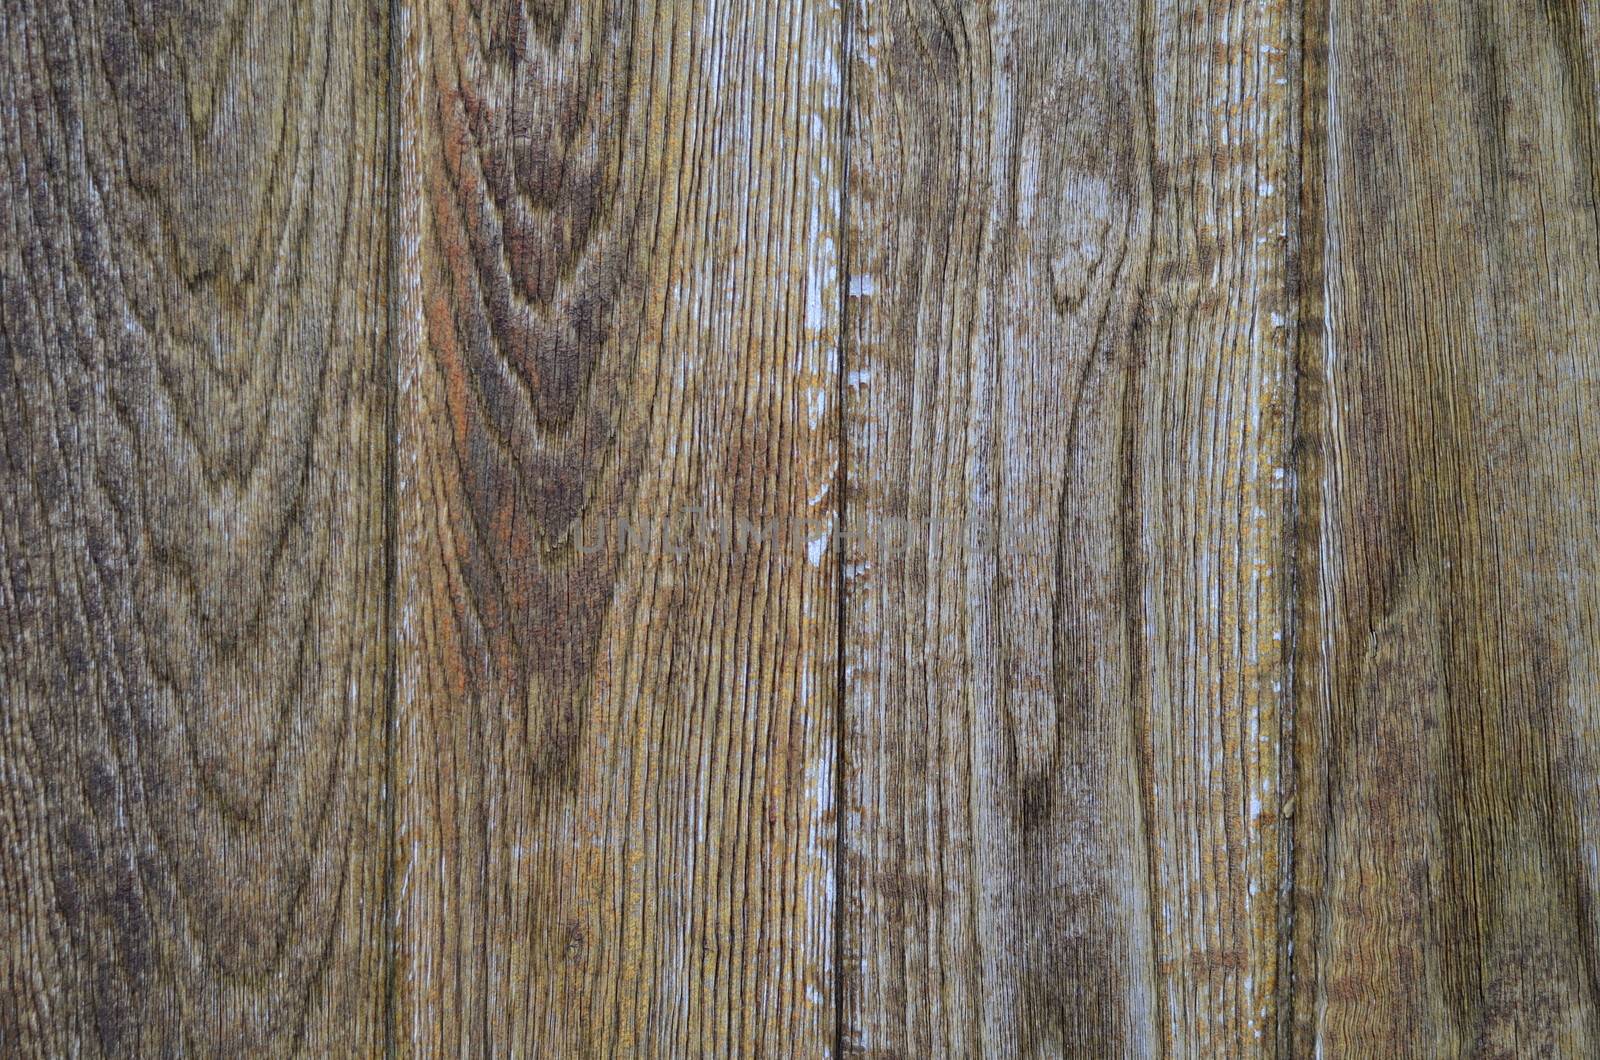 Heavy Wooden Door by mrdoomits